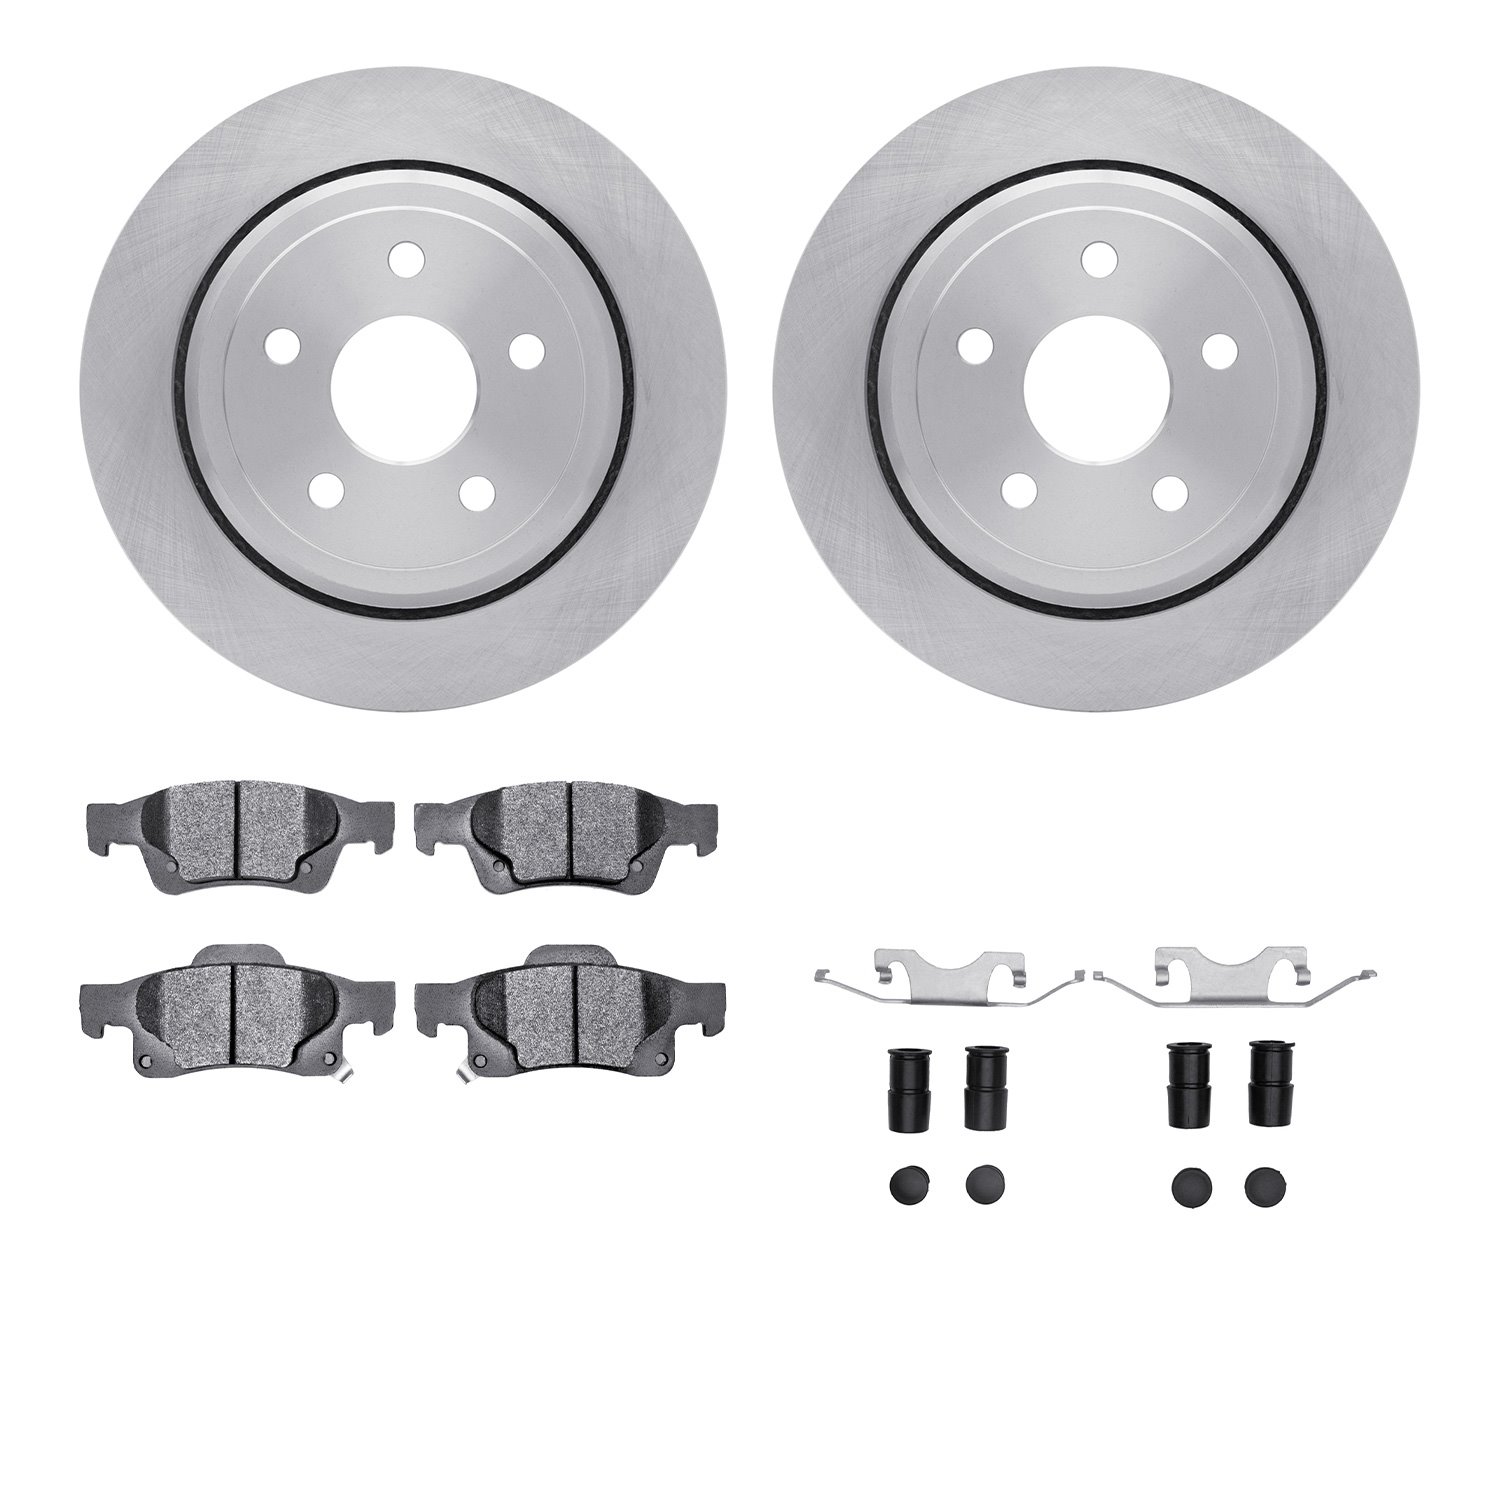 6212-42007 Brake Rotors w/Heavy-Duty Brake Pads Kit & Hardware, Fits Select Mopar, Position: Rear